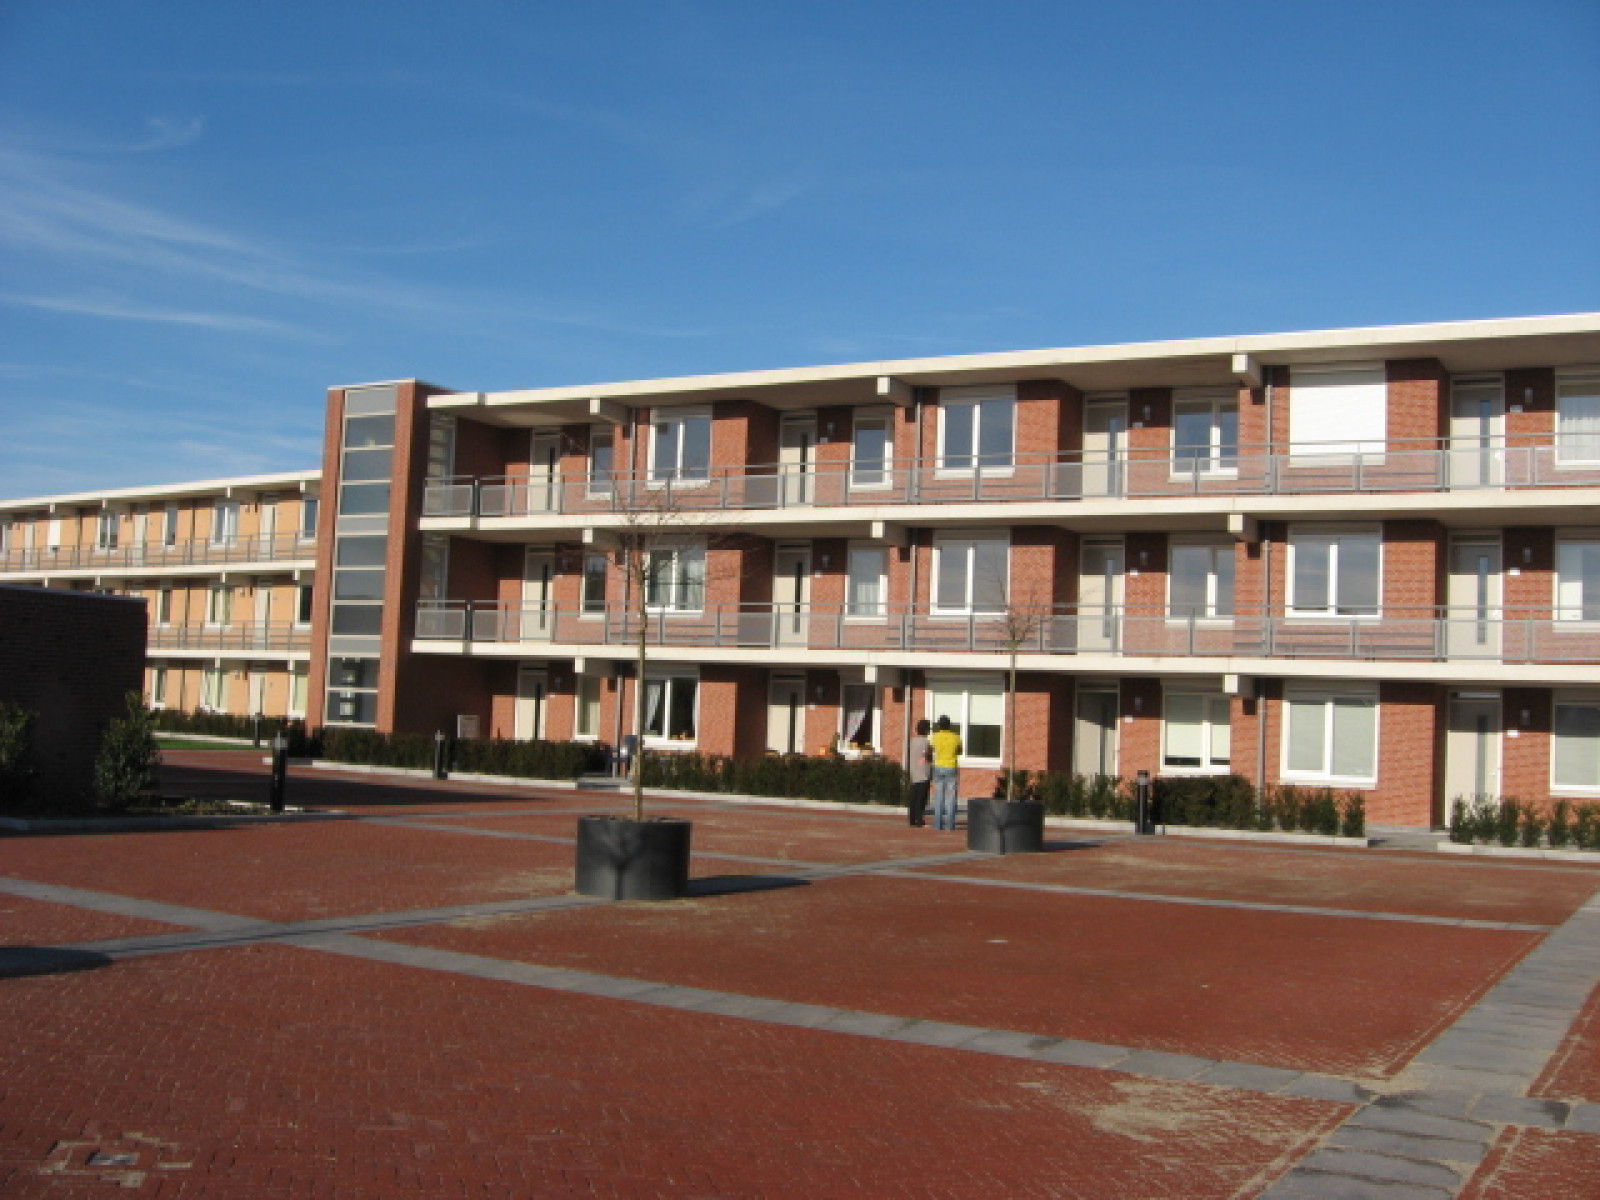 Appartement in Papendrecht